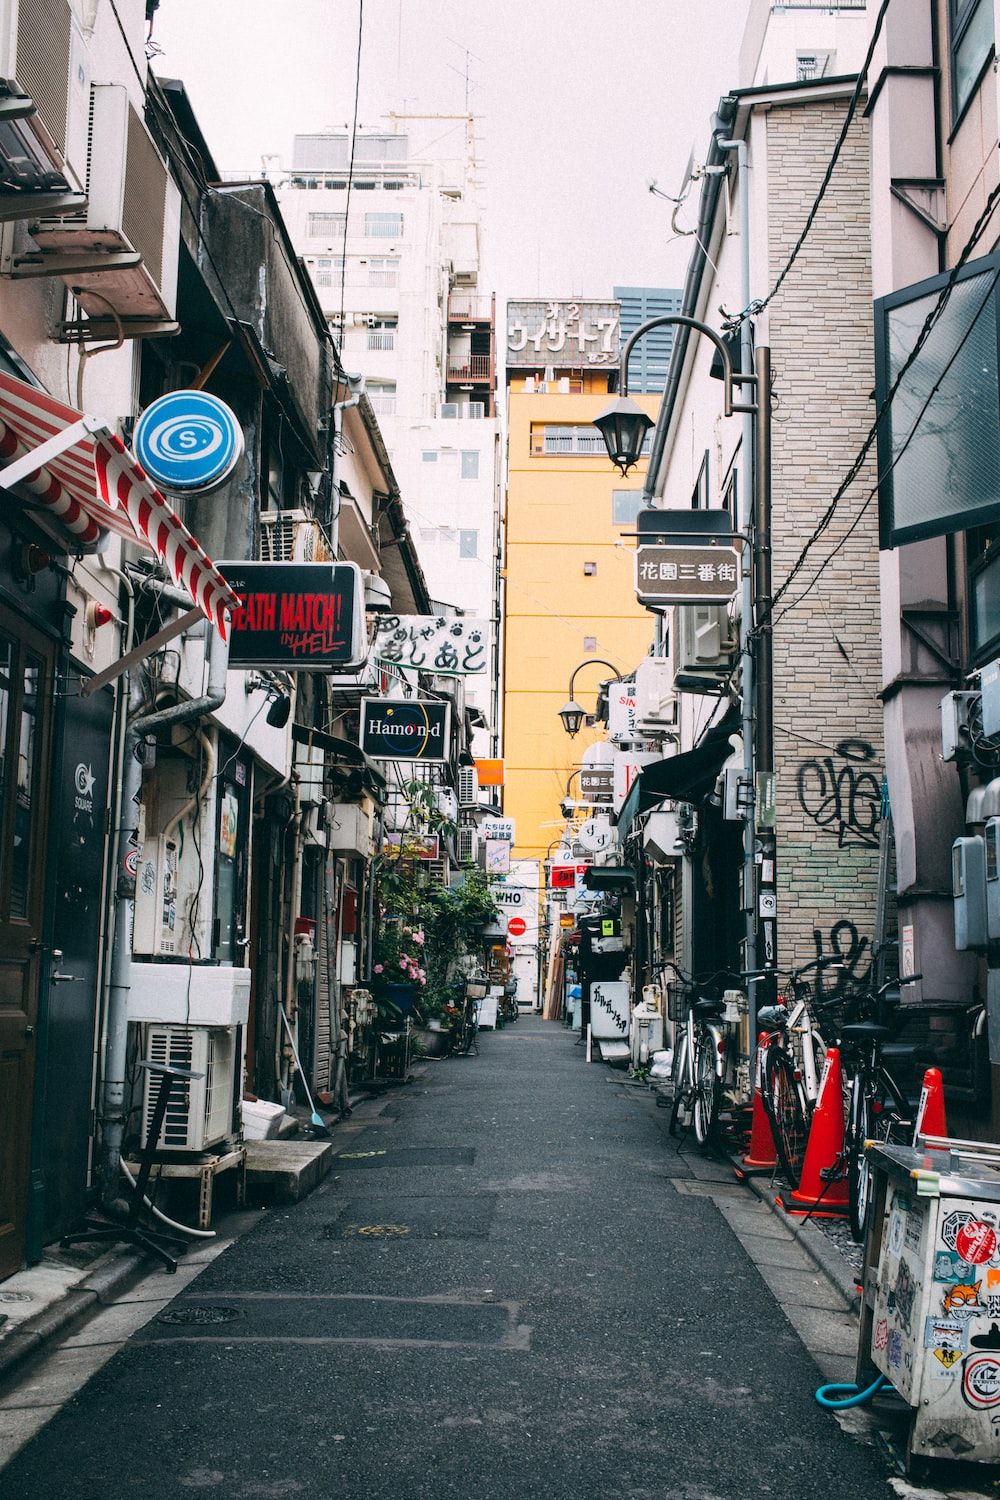 A street in Tokyo, Japan. - Tokyo